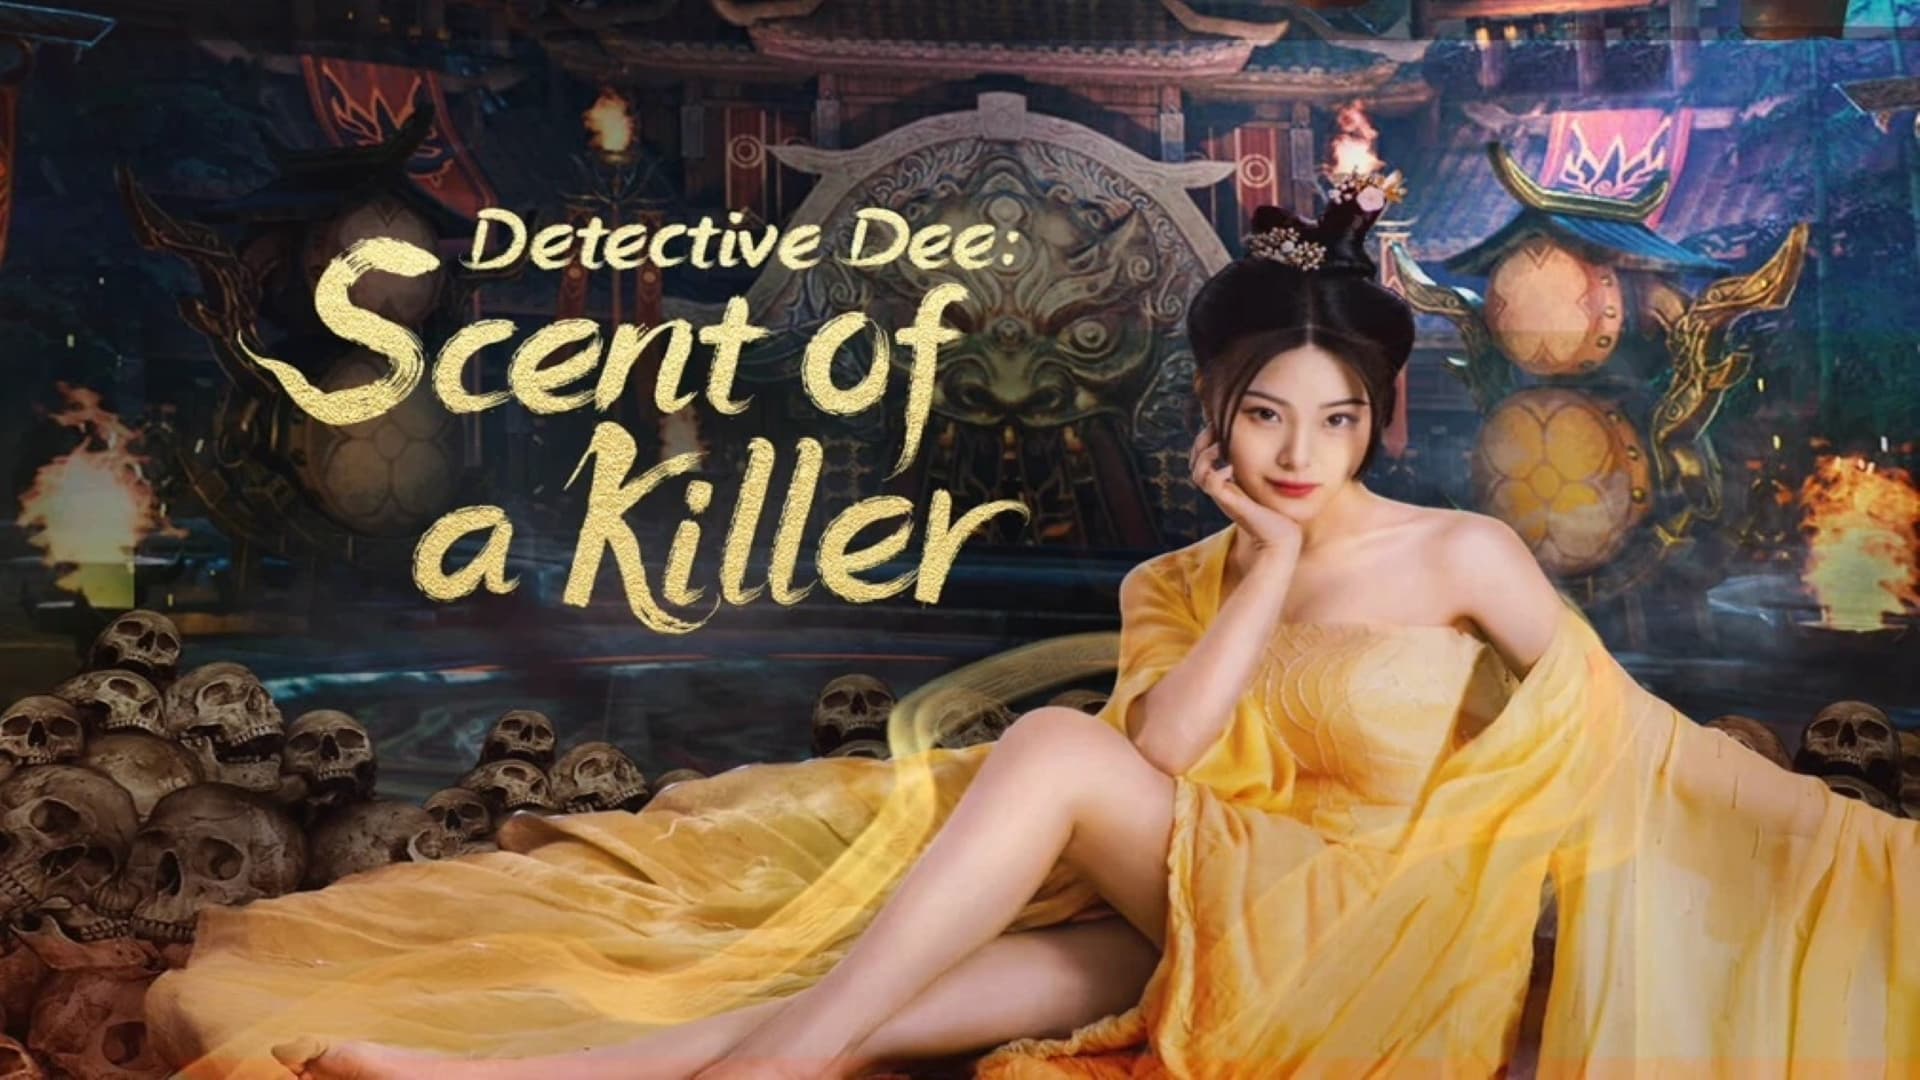 Xem Phim Định Nhân Kiệt: Đoạt Mệnh Kì Hương (Detective Dee: Scent of a Killer)